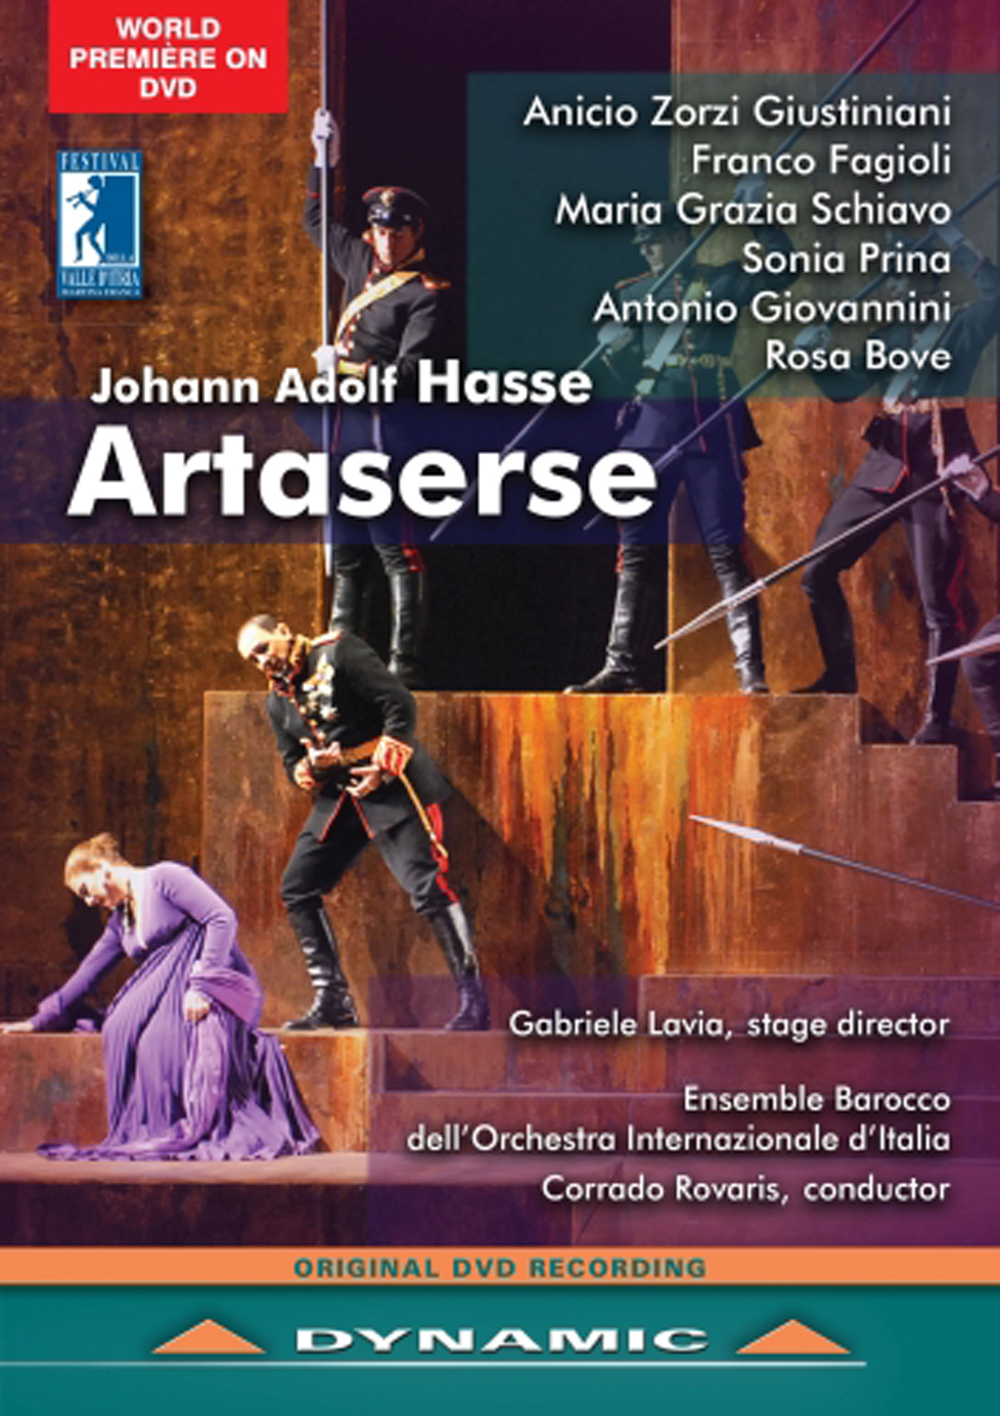 Music Dvd Johann Adolf Hasse - Artaserse (Dramma Per Musica In 3 Atti) (2 Dvd) NUOVO SIGILLATO, EDIZIONE DEL 09/02/2016 SUBITO DISPONIBILE